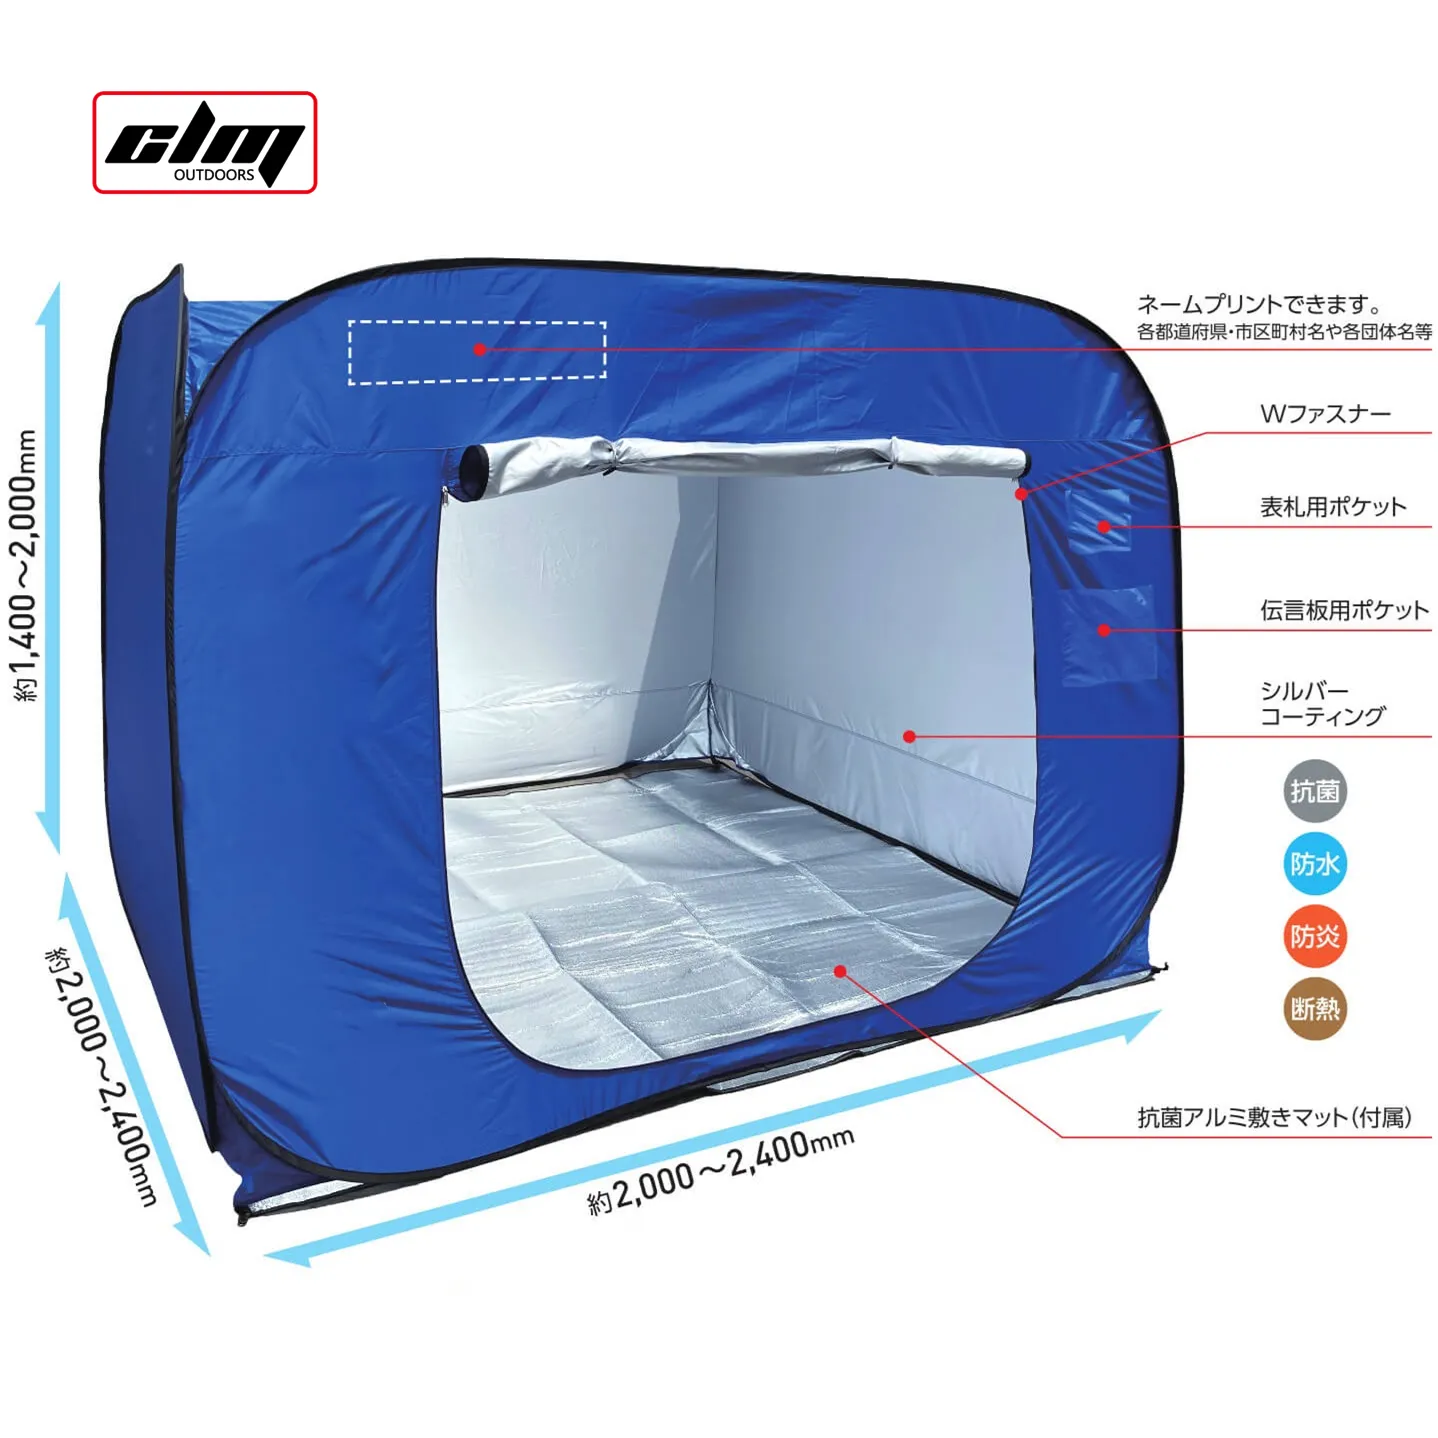 CLM कस्टम जापान आपदा राहत अस्तित्व तम्बू आपातकालीन आश्रय तम्बू ट्यूब आपदा राहत आउटडोर तम्बू के लिए बिक्री